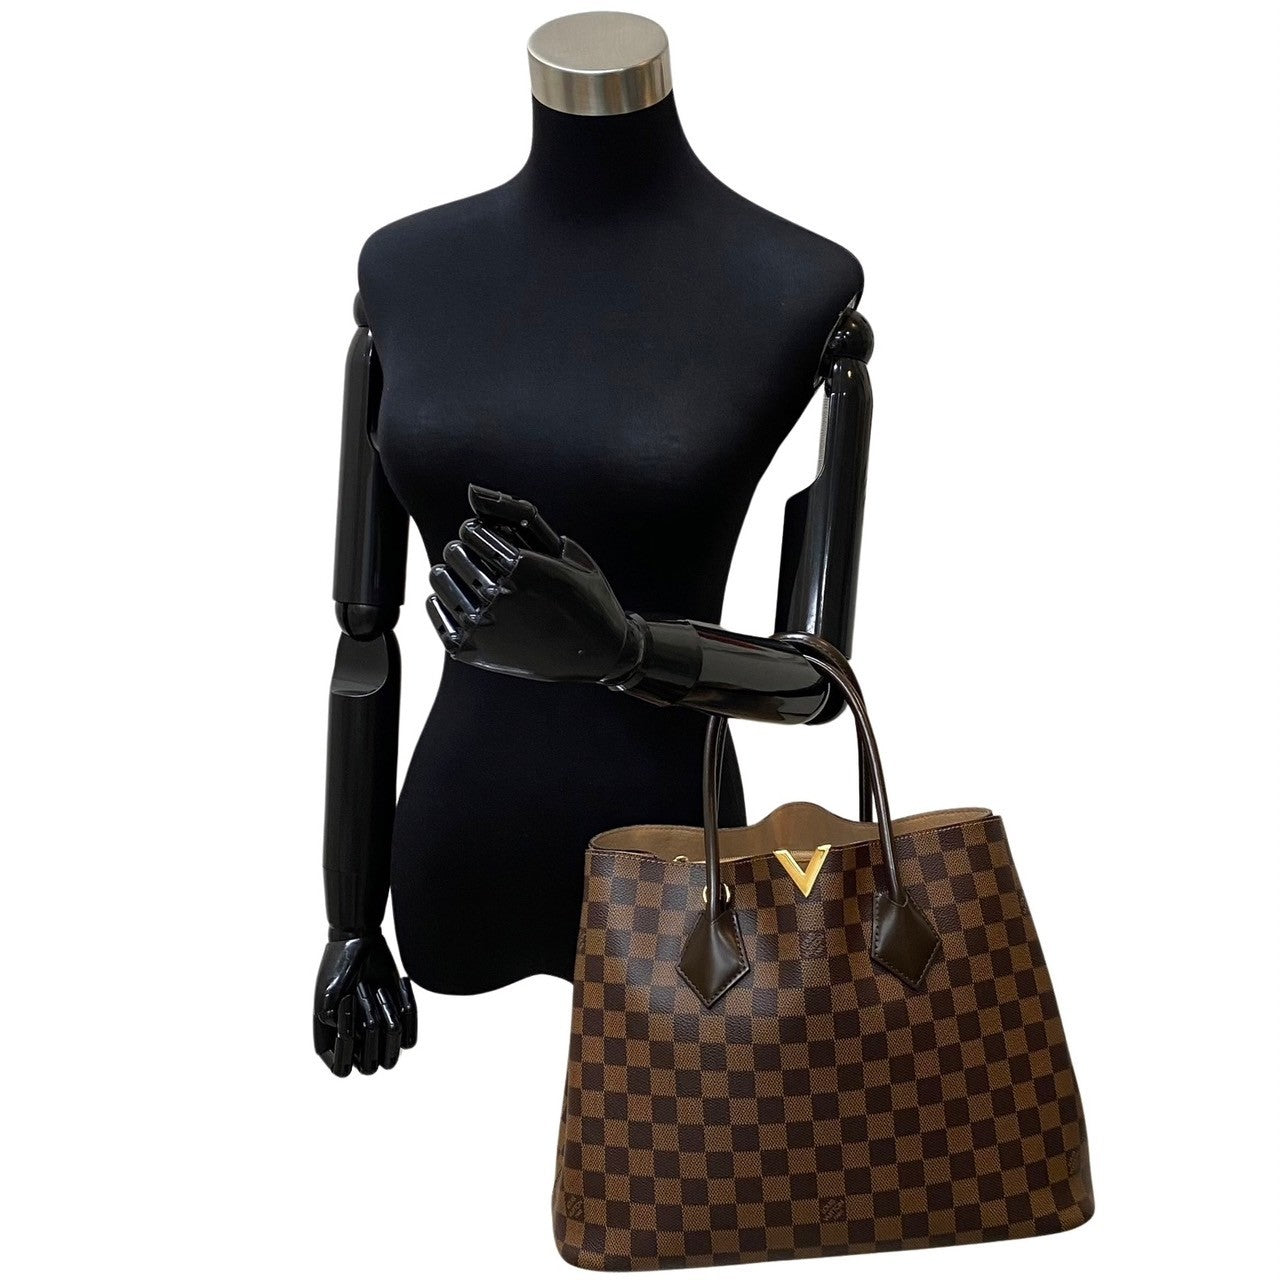 Louis Vuitton Kensington Canvas Shoulder Bag N41435 in Excellent condition